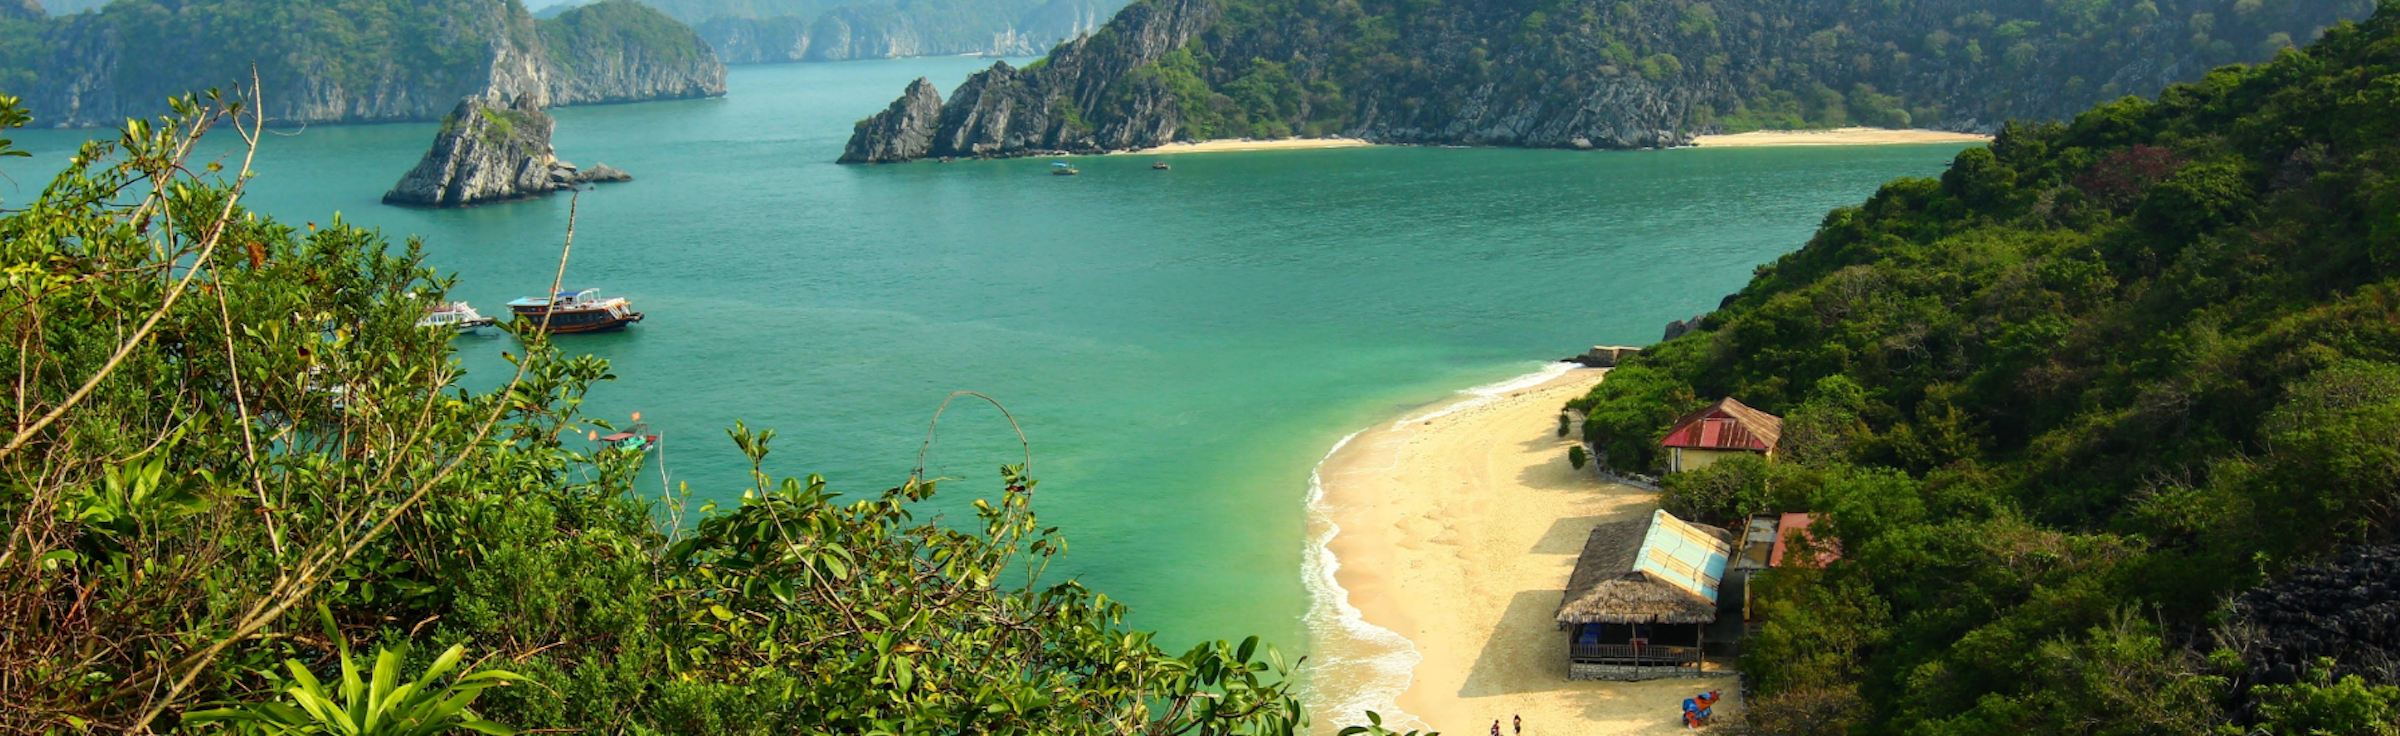 Honeymoon vacations in Vietnam